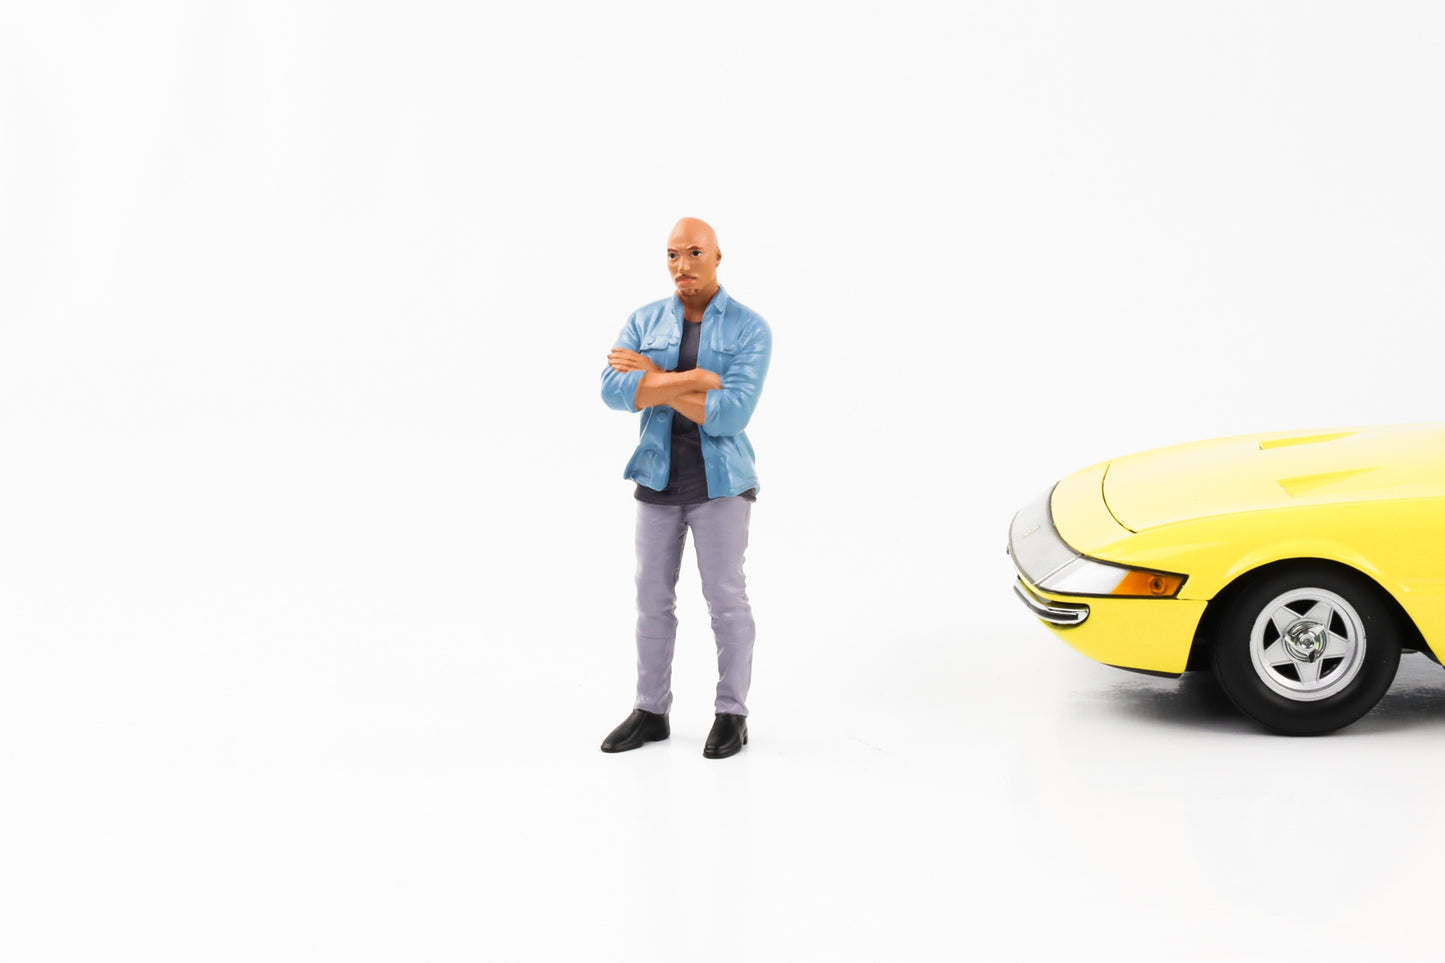 1:18 Figur Car Meet 3 Mann mit Glatze und Hemd American Diorama Figuren